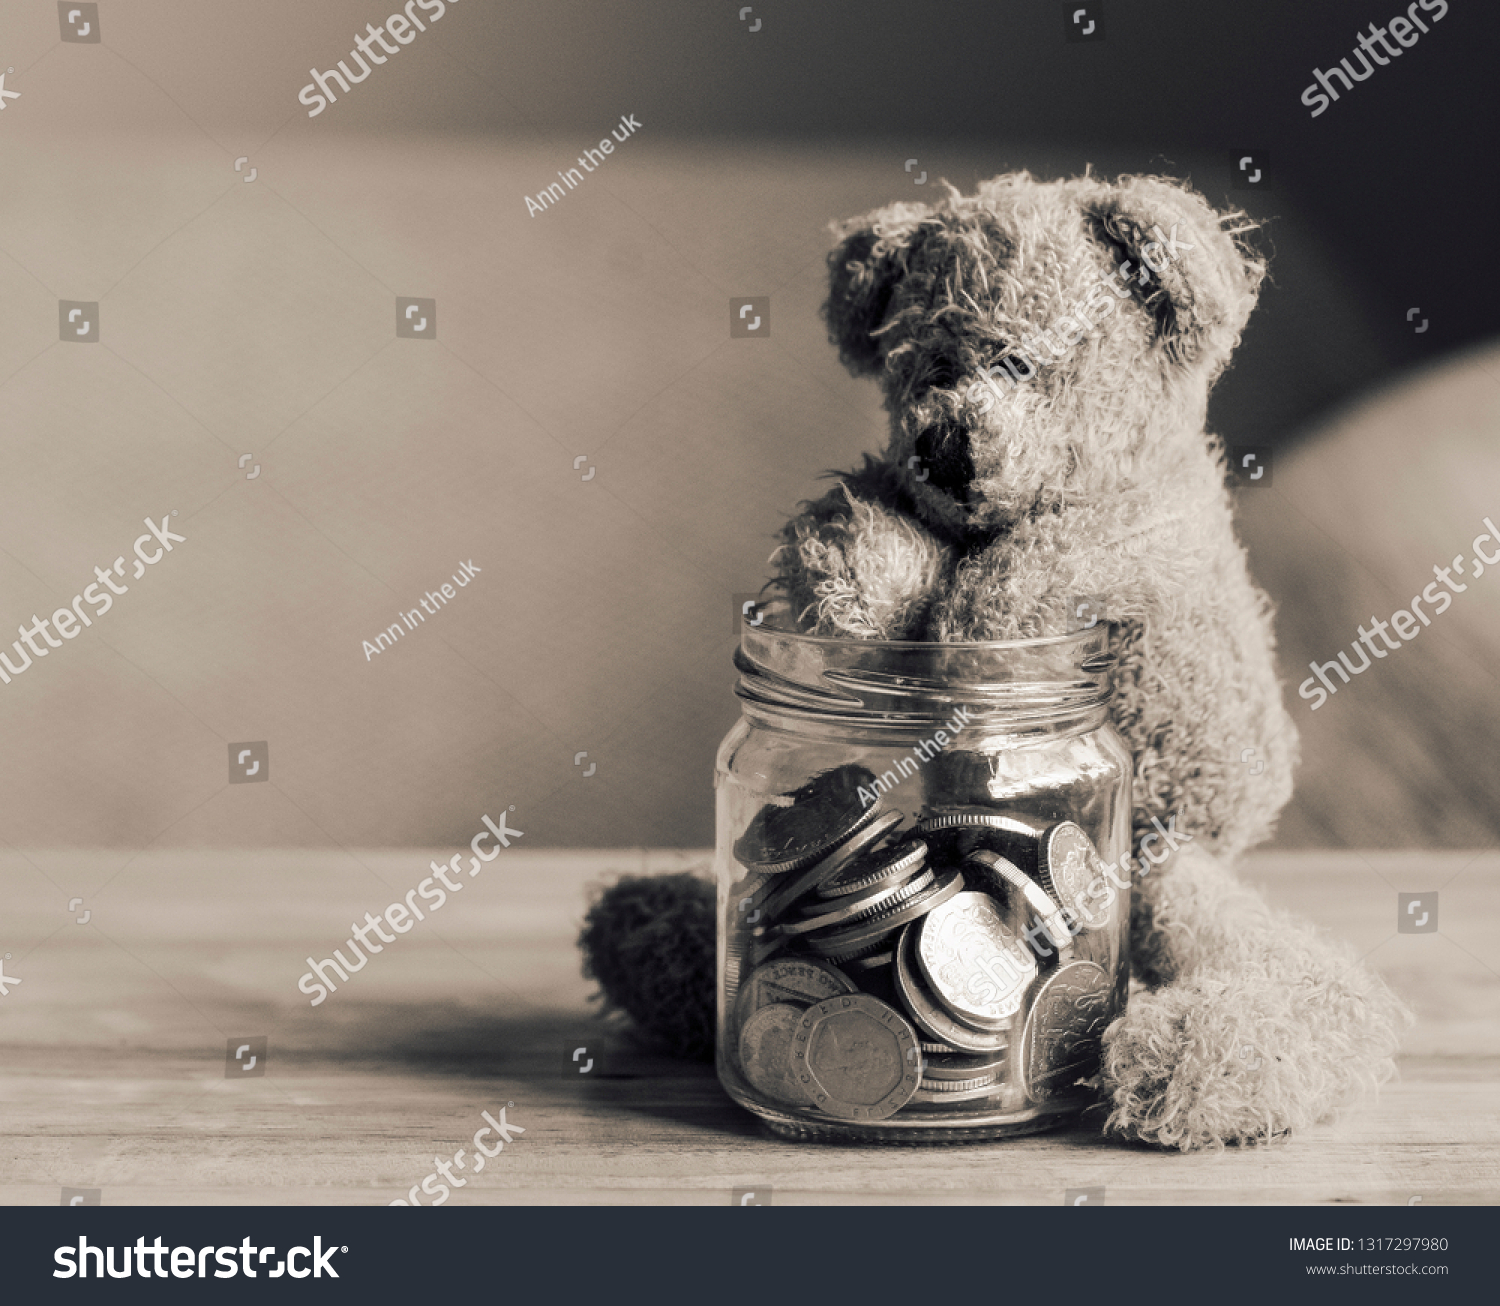 teddy bear with human face